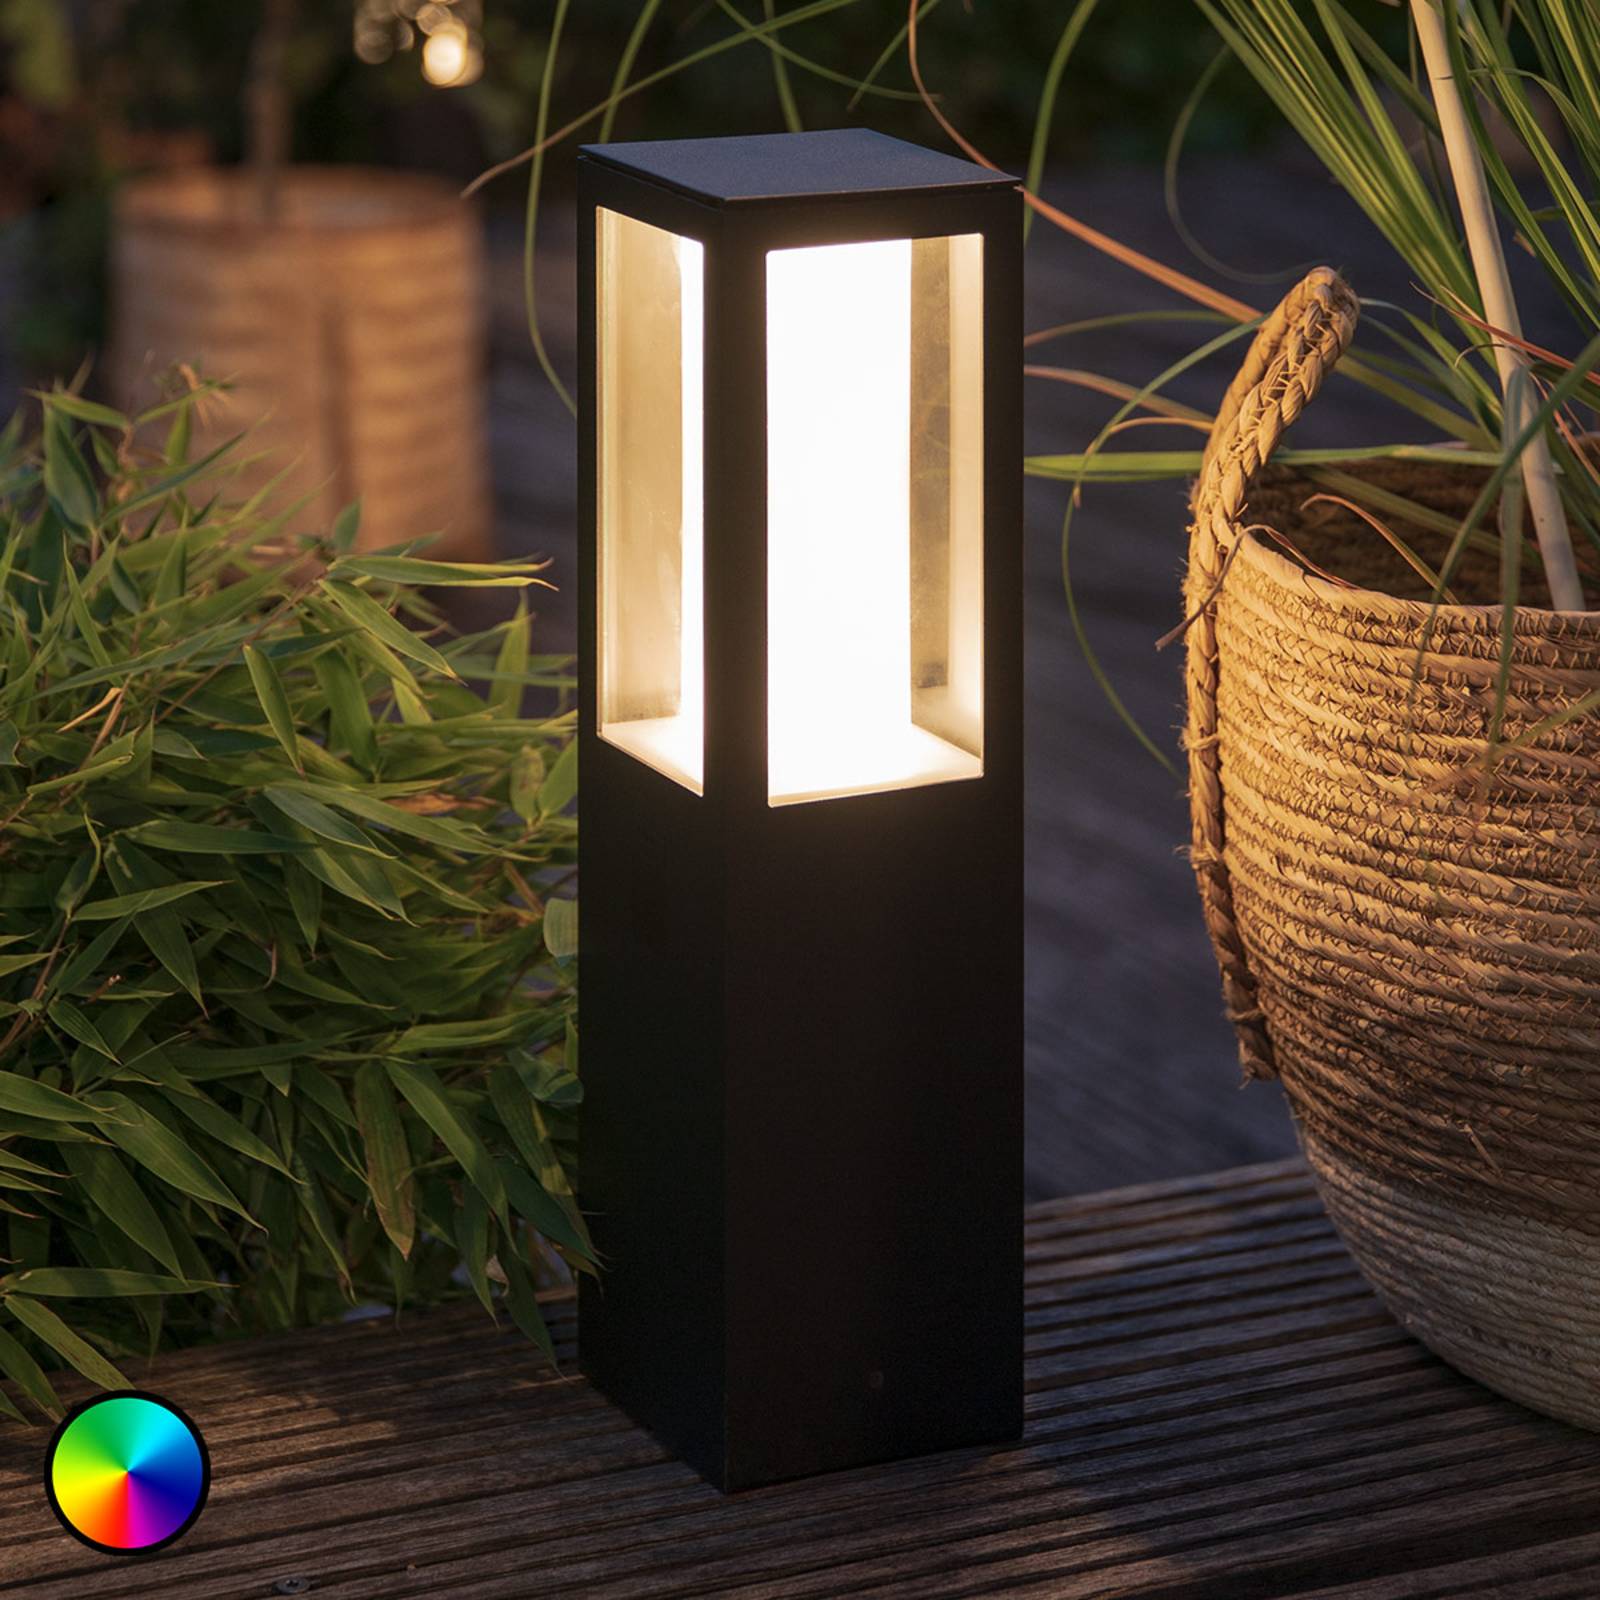 E-shop Hue White+Color Impress soklové LED svietidlo